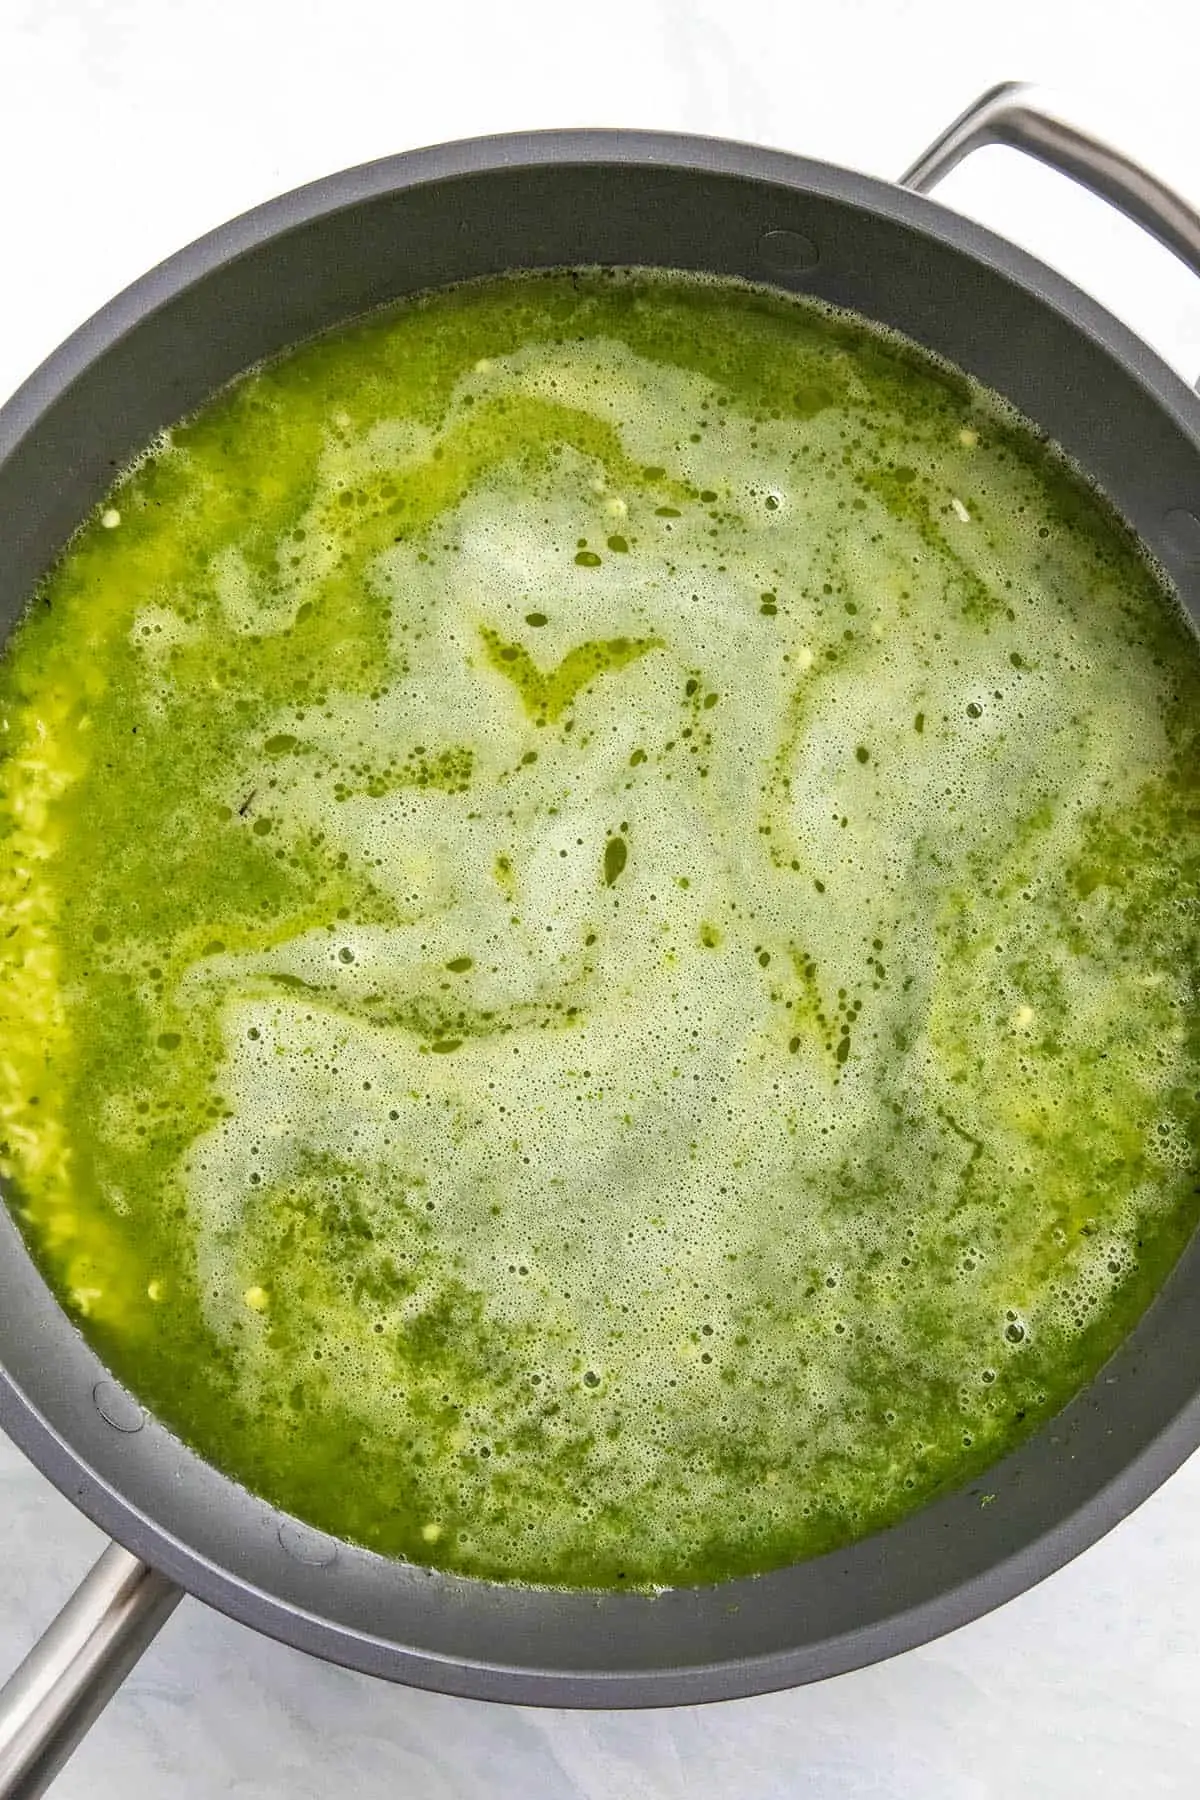 Simmering arroz verde in a pan